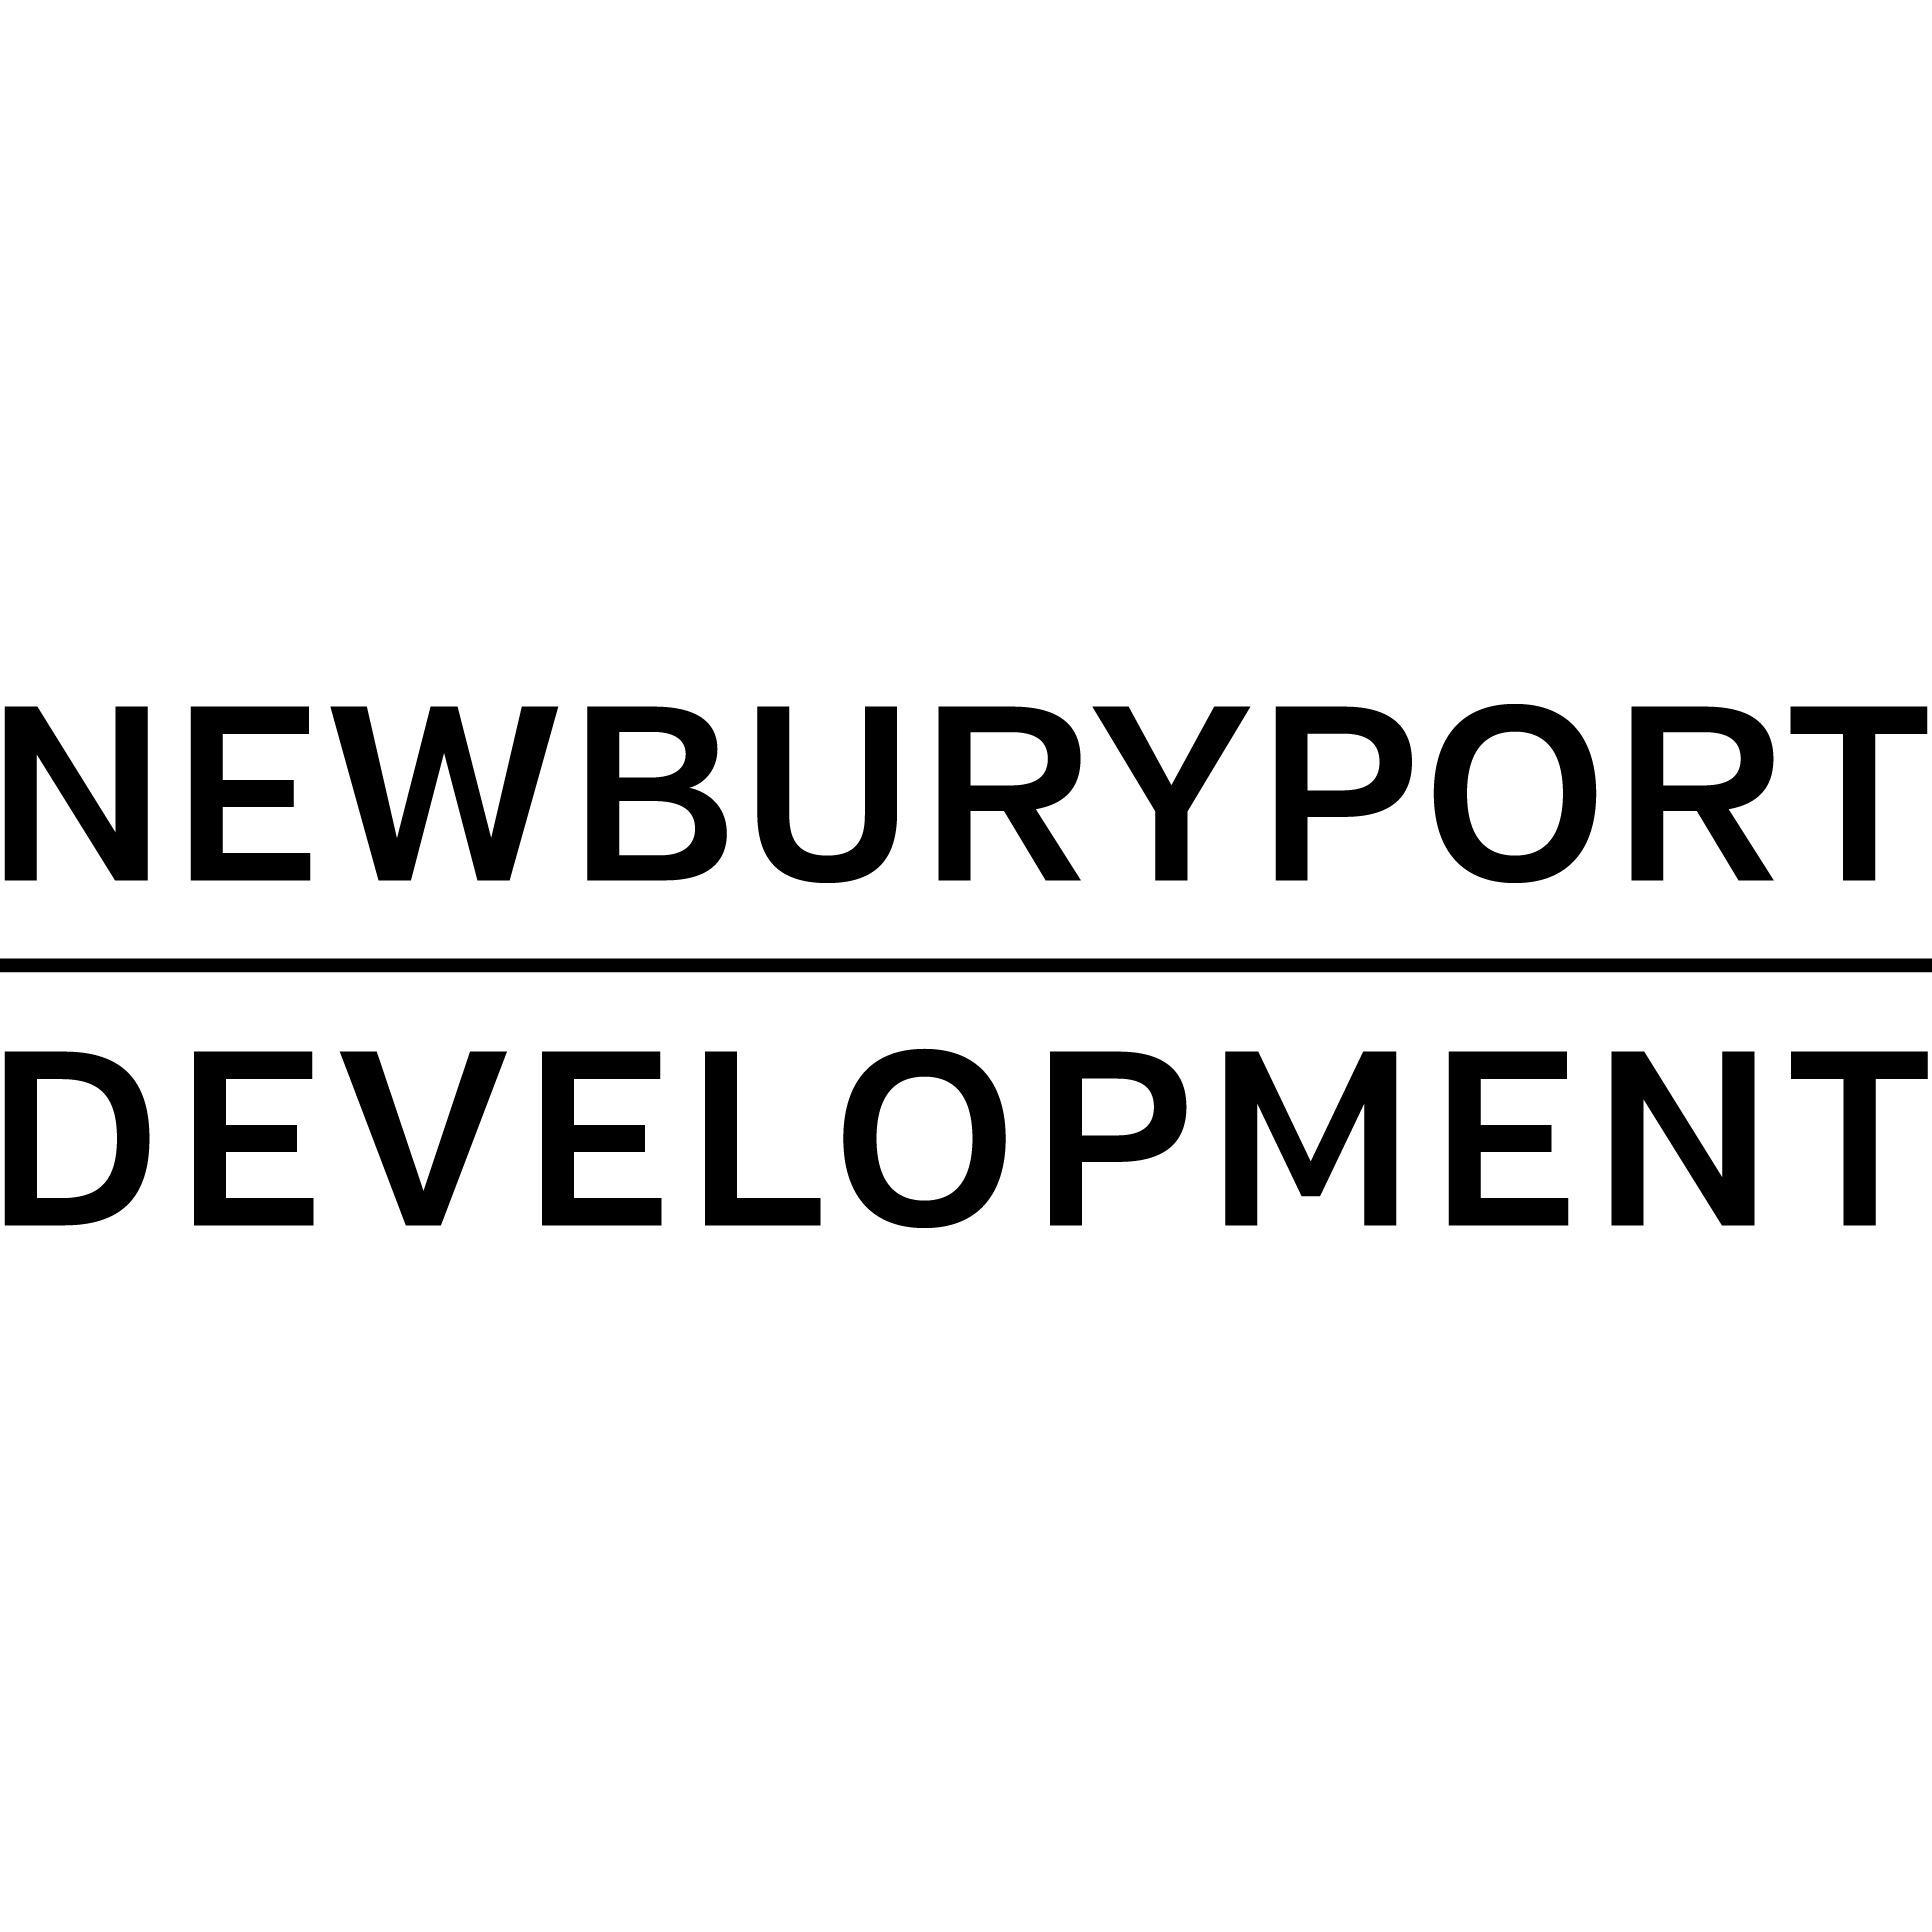 Newburyport Development